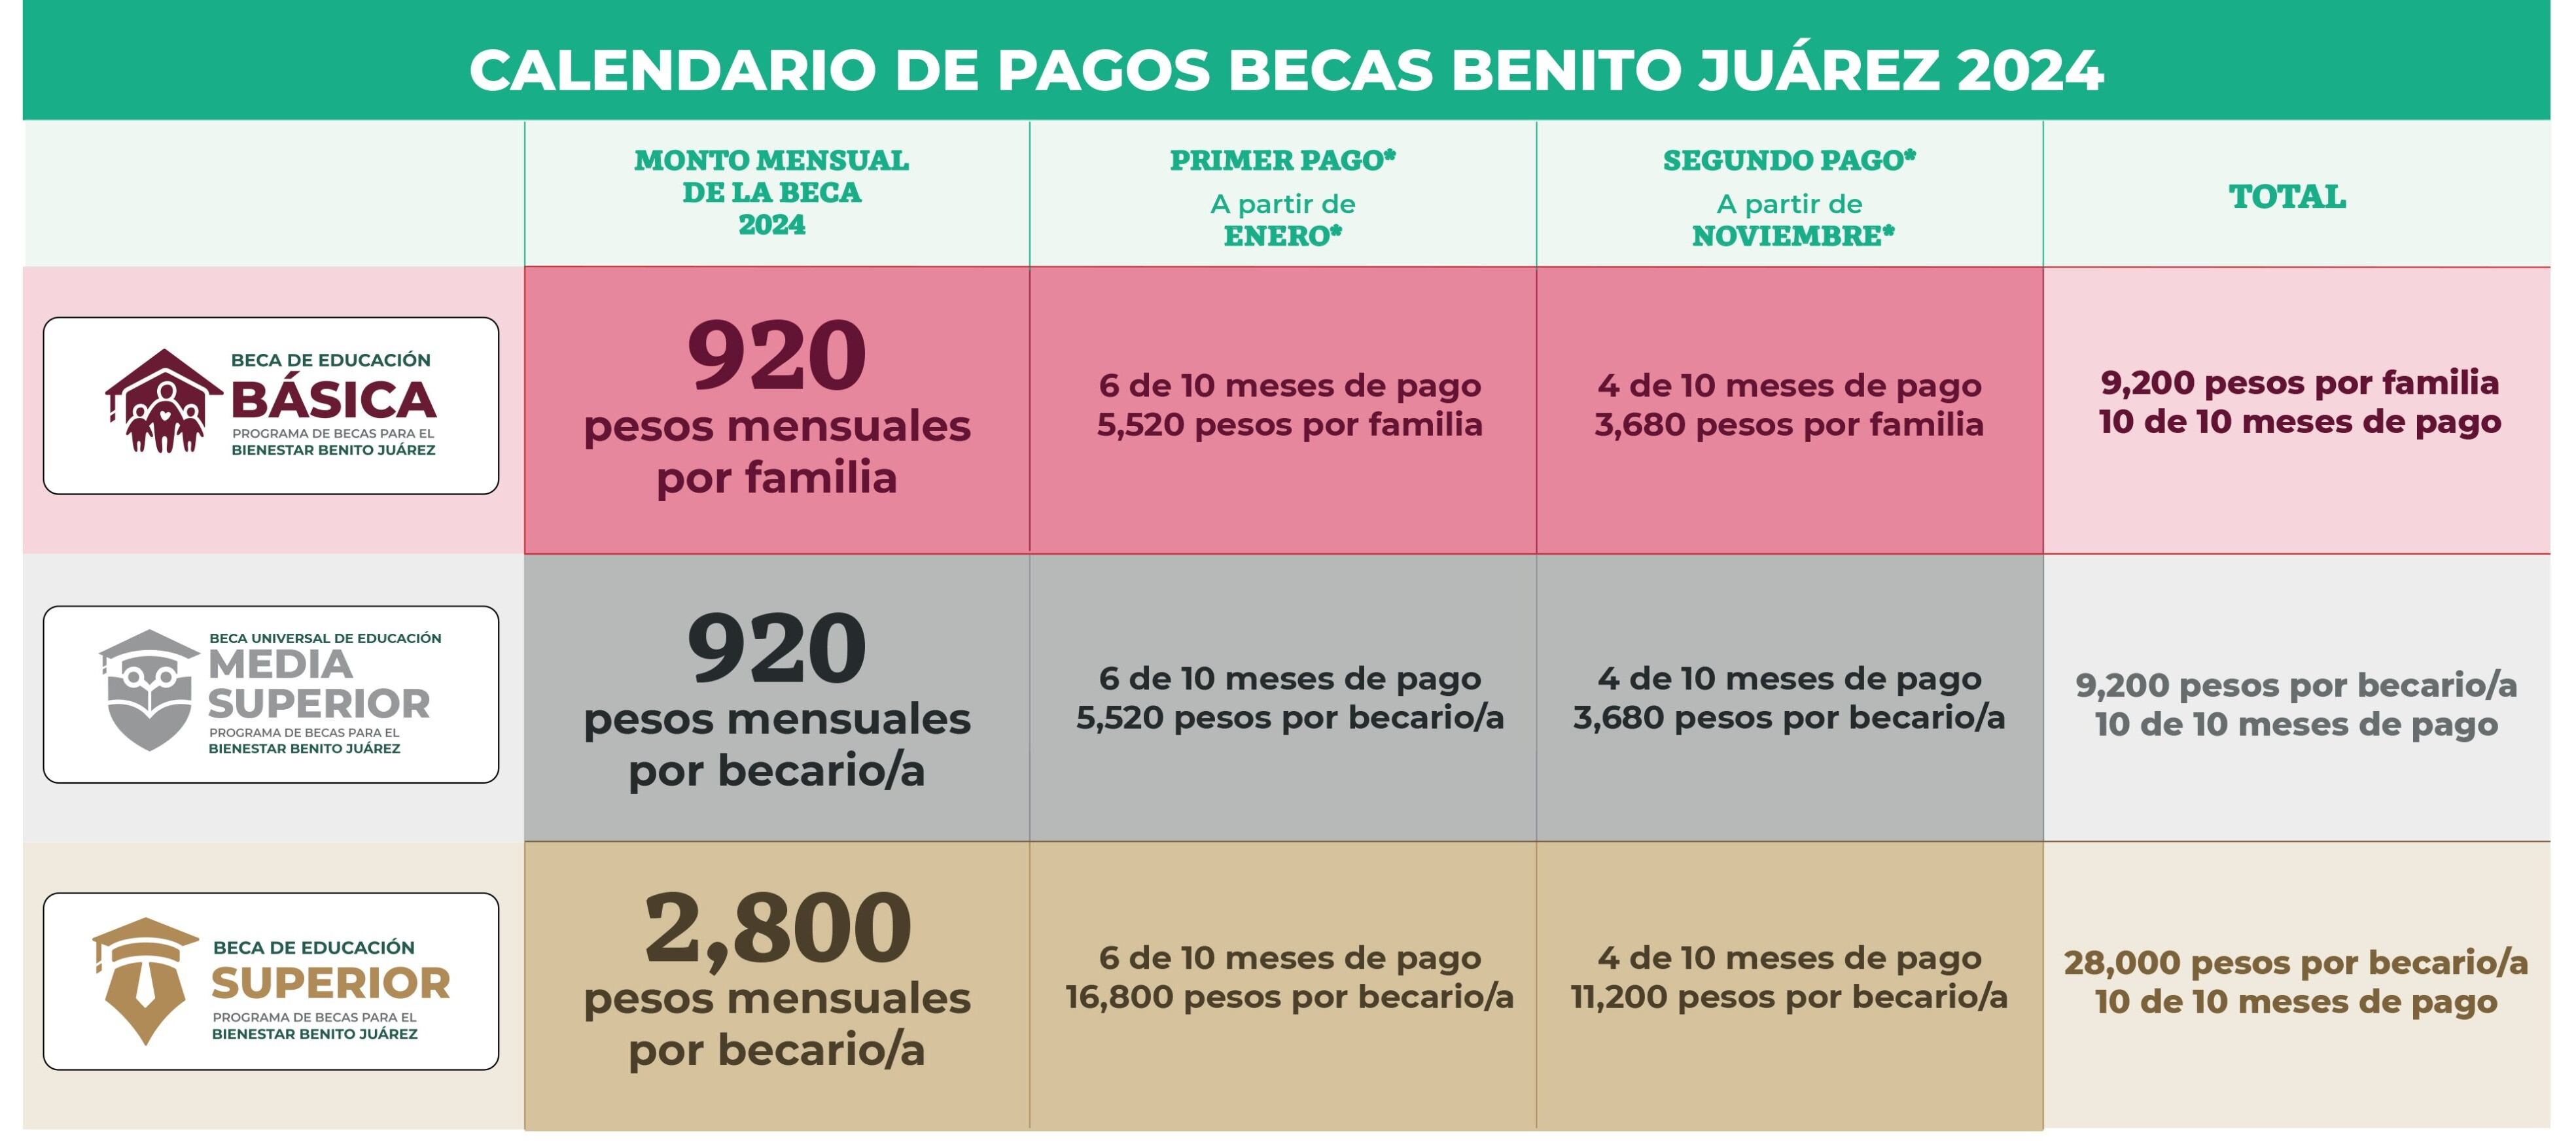 Calendario de pagos beca Benito Juárez 2024